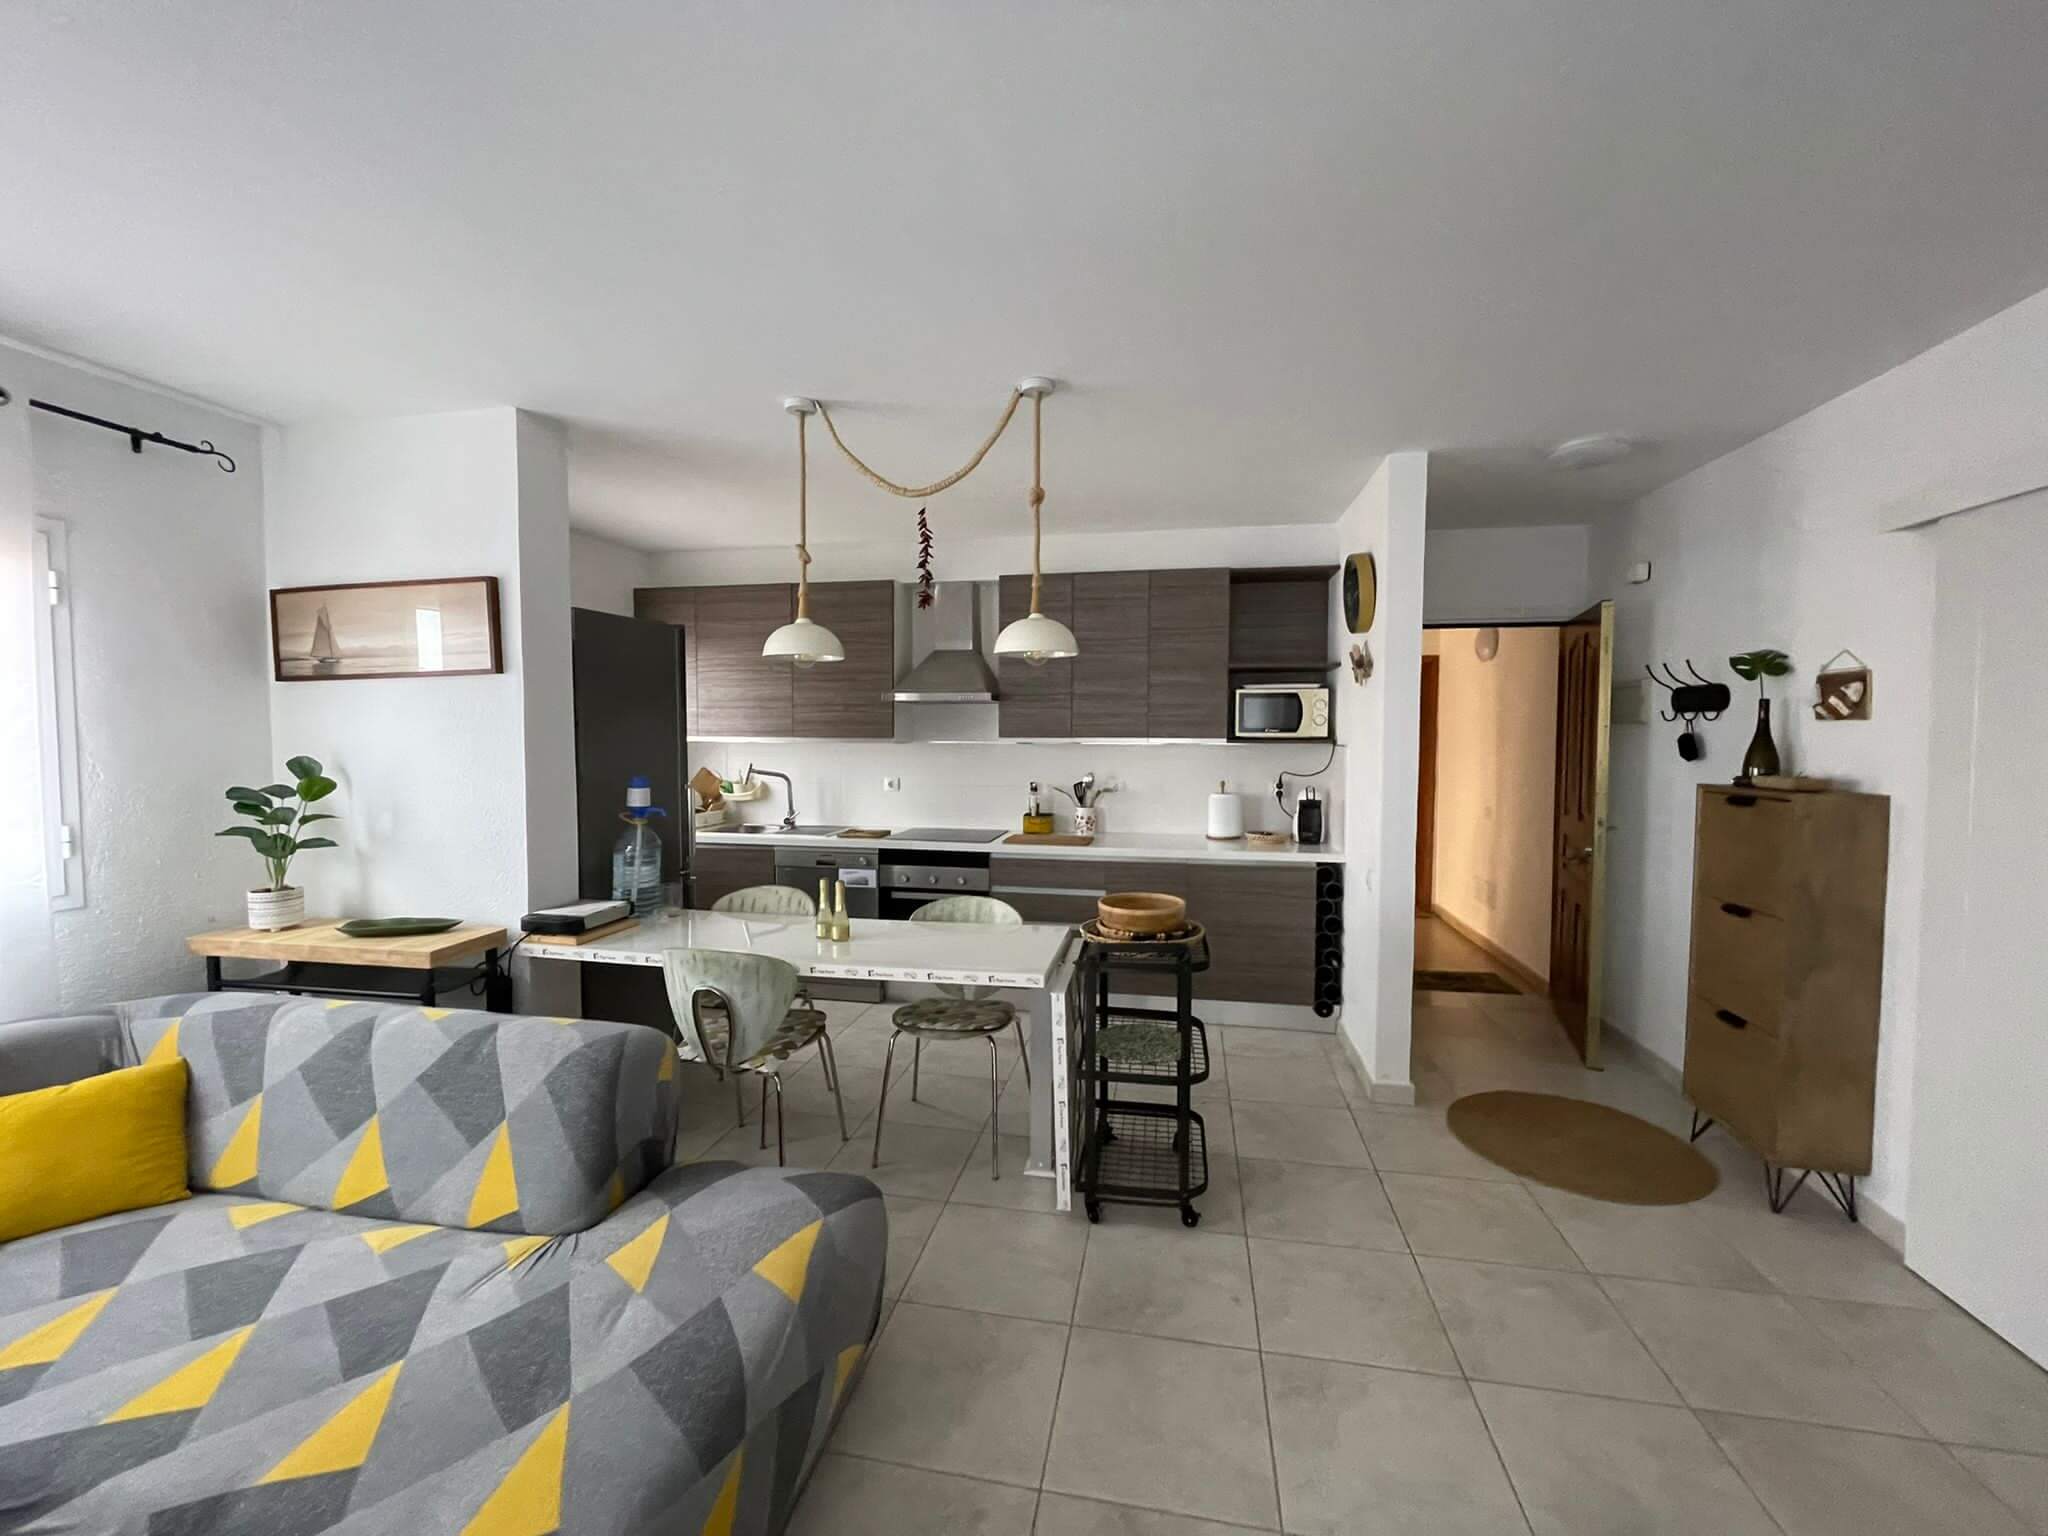 Llargia - Precioso apartamento amueblado en alquiler en Fuerteventura